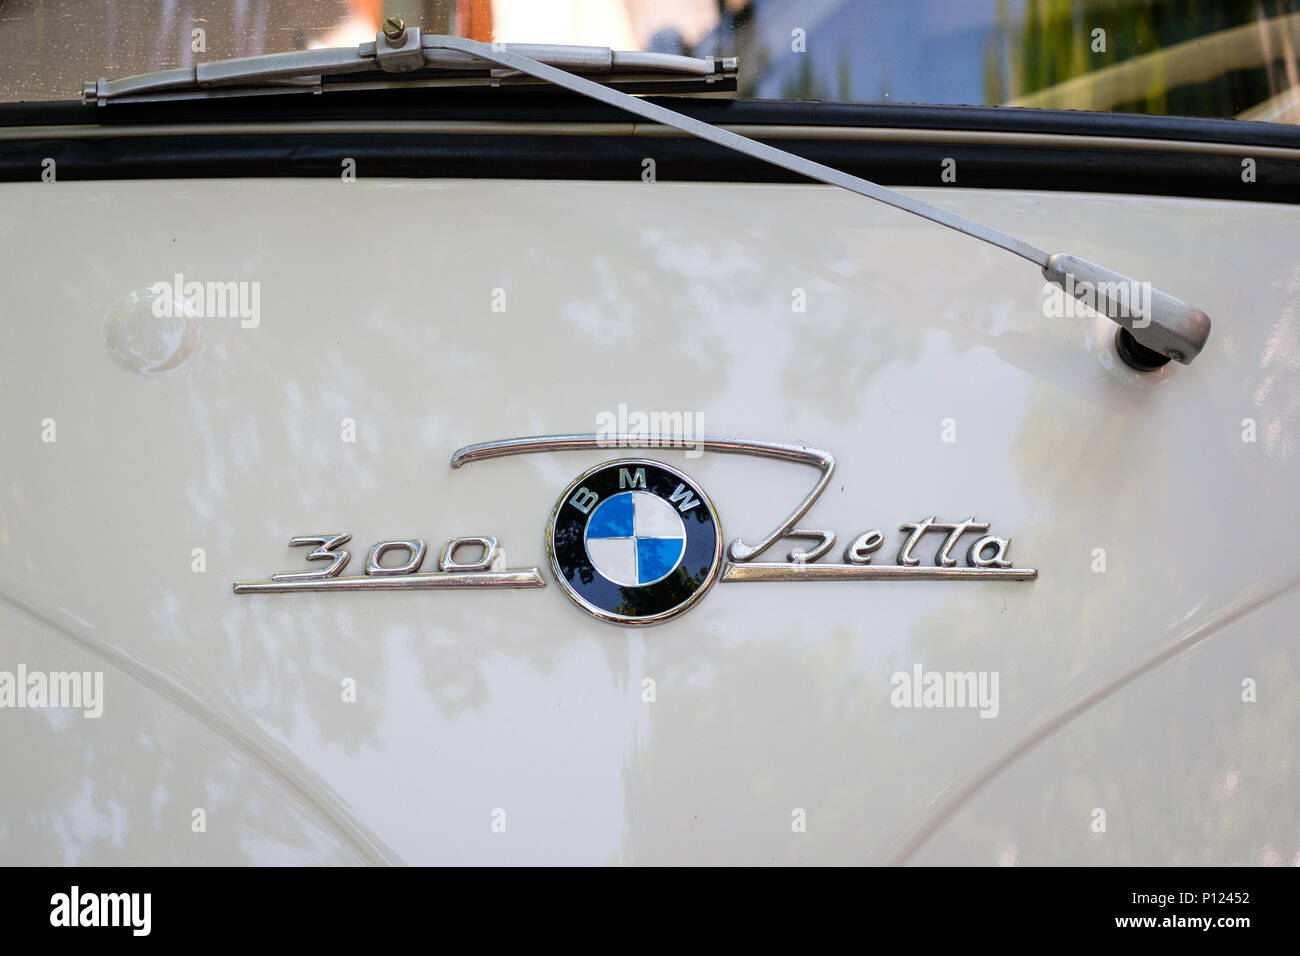 Berlin, Deutschland - Juni 09, 2018: Auto design Details und Logo/Marke Detailansicht der BMW Isetta 300 bei Oldtimer Automobil Veranstaltung in Berlin Stockfoto